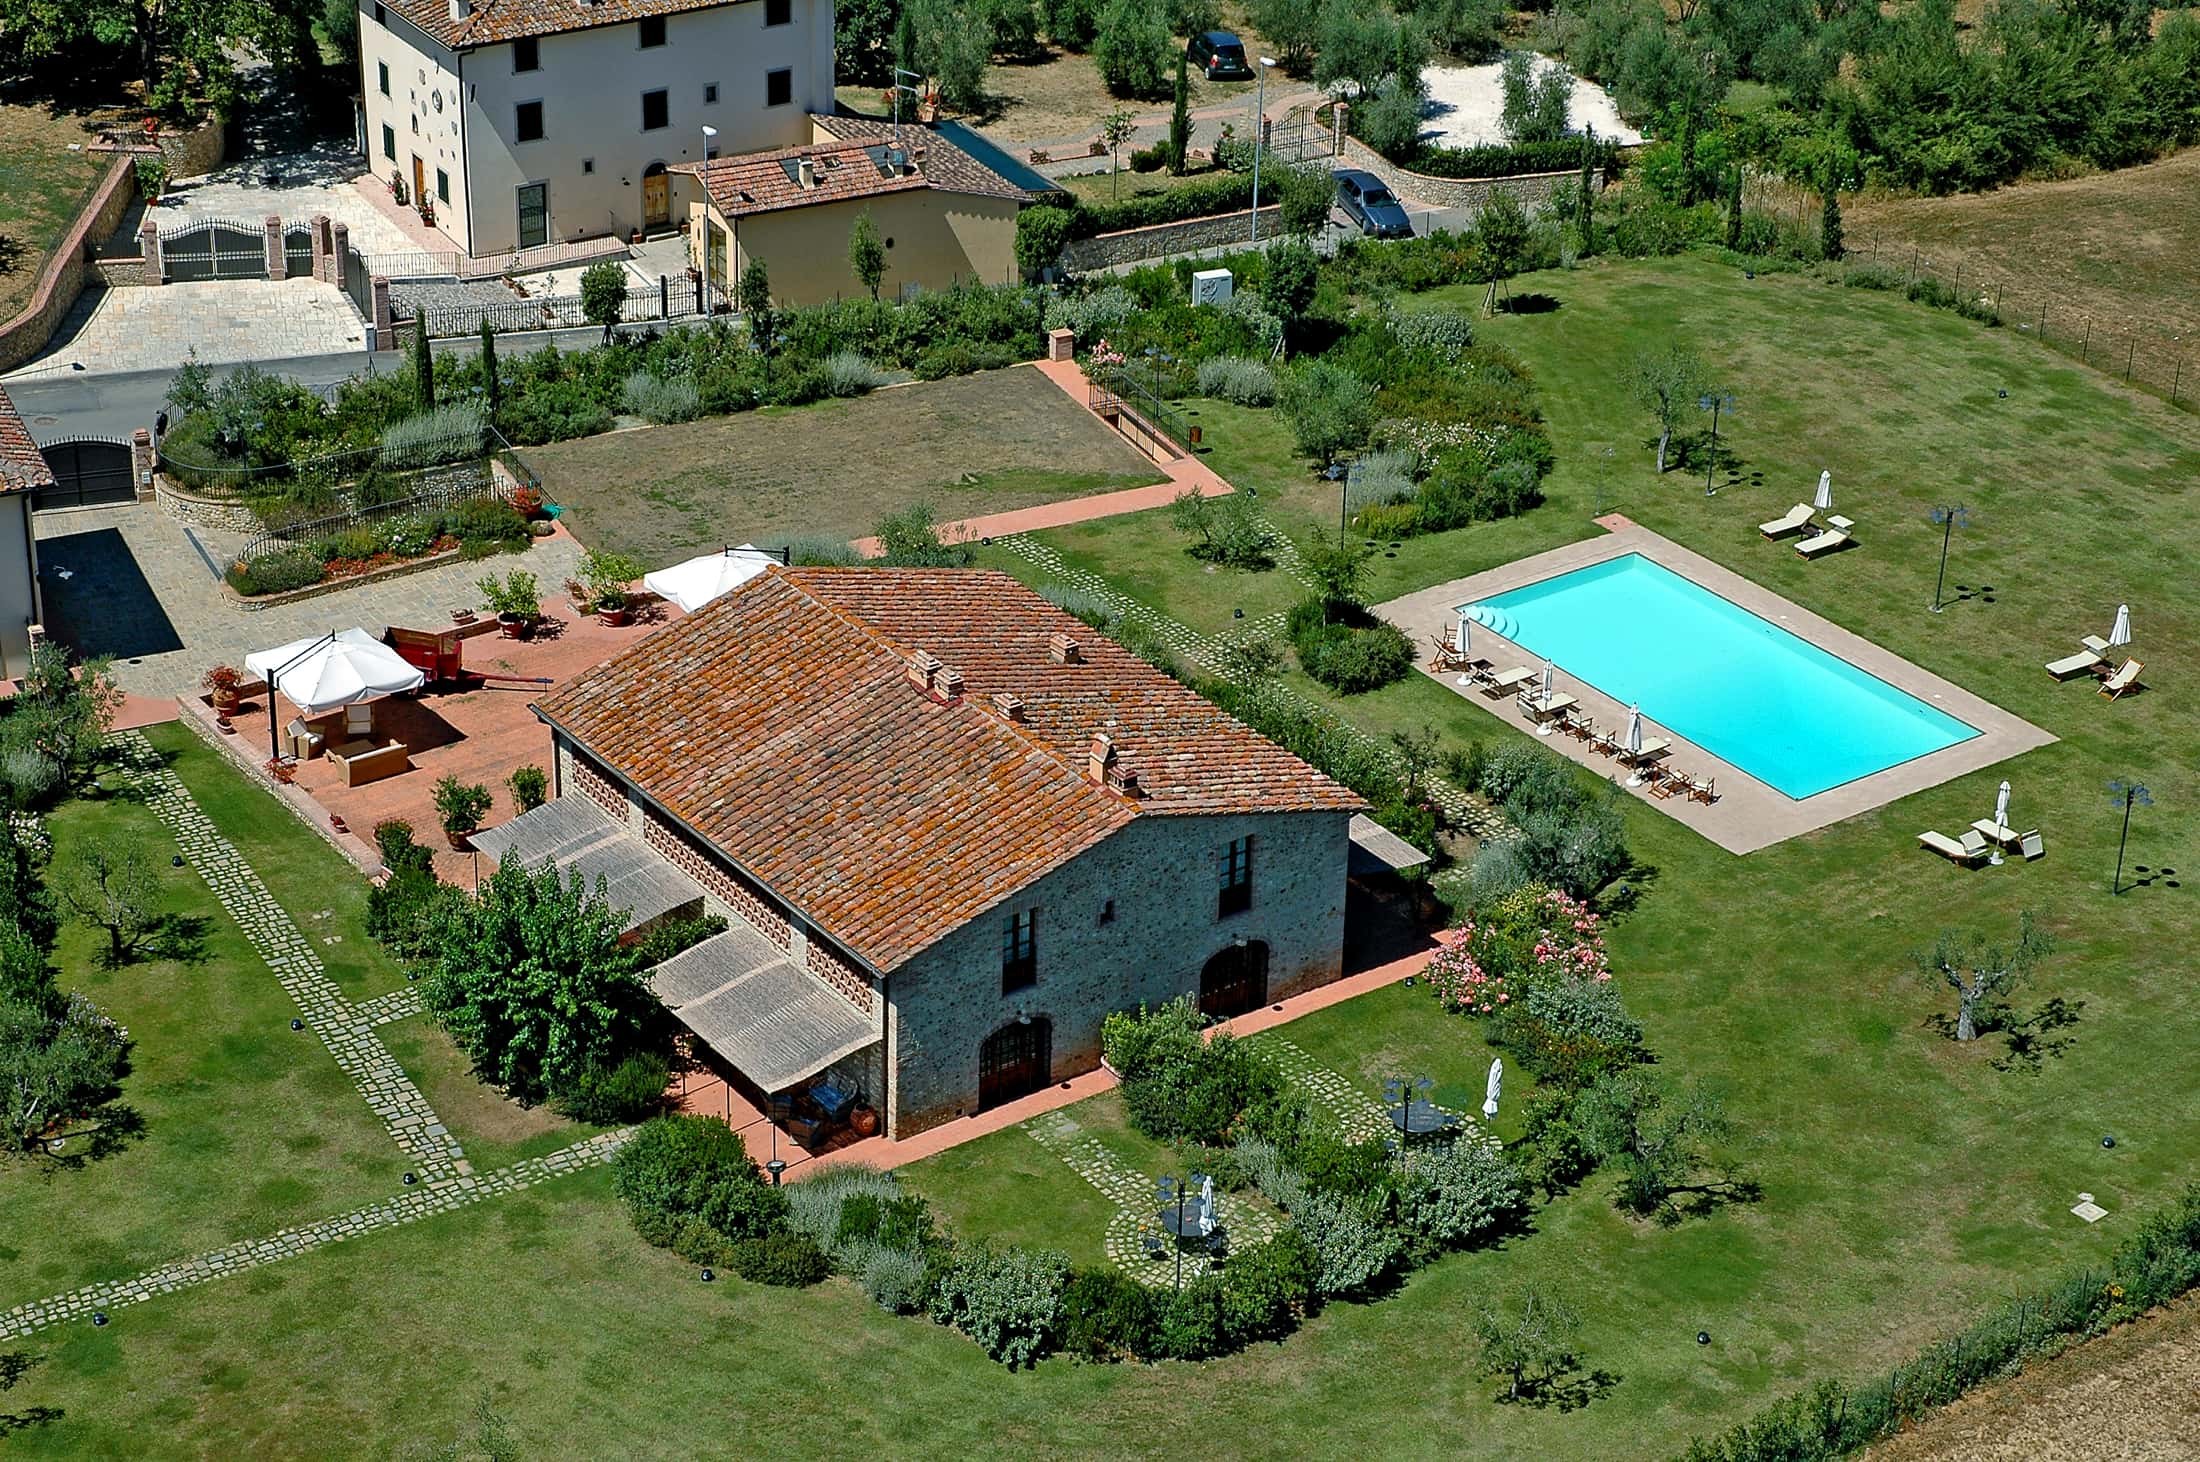 353_4f654a4_Agriturismo, Luxe vakantiehuis met zwembad, Toscane, Siena, Florence, vakantiewoningen, Capannina di Matteo, Italie (20)